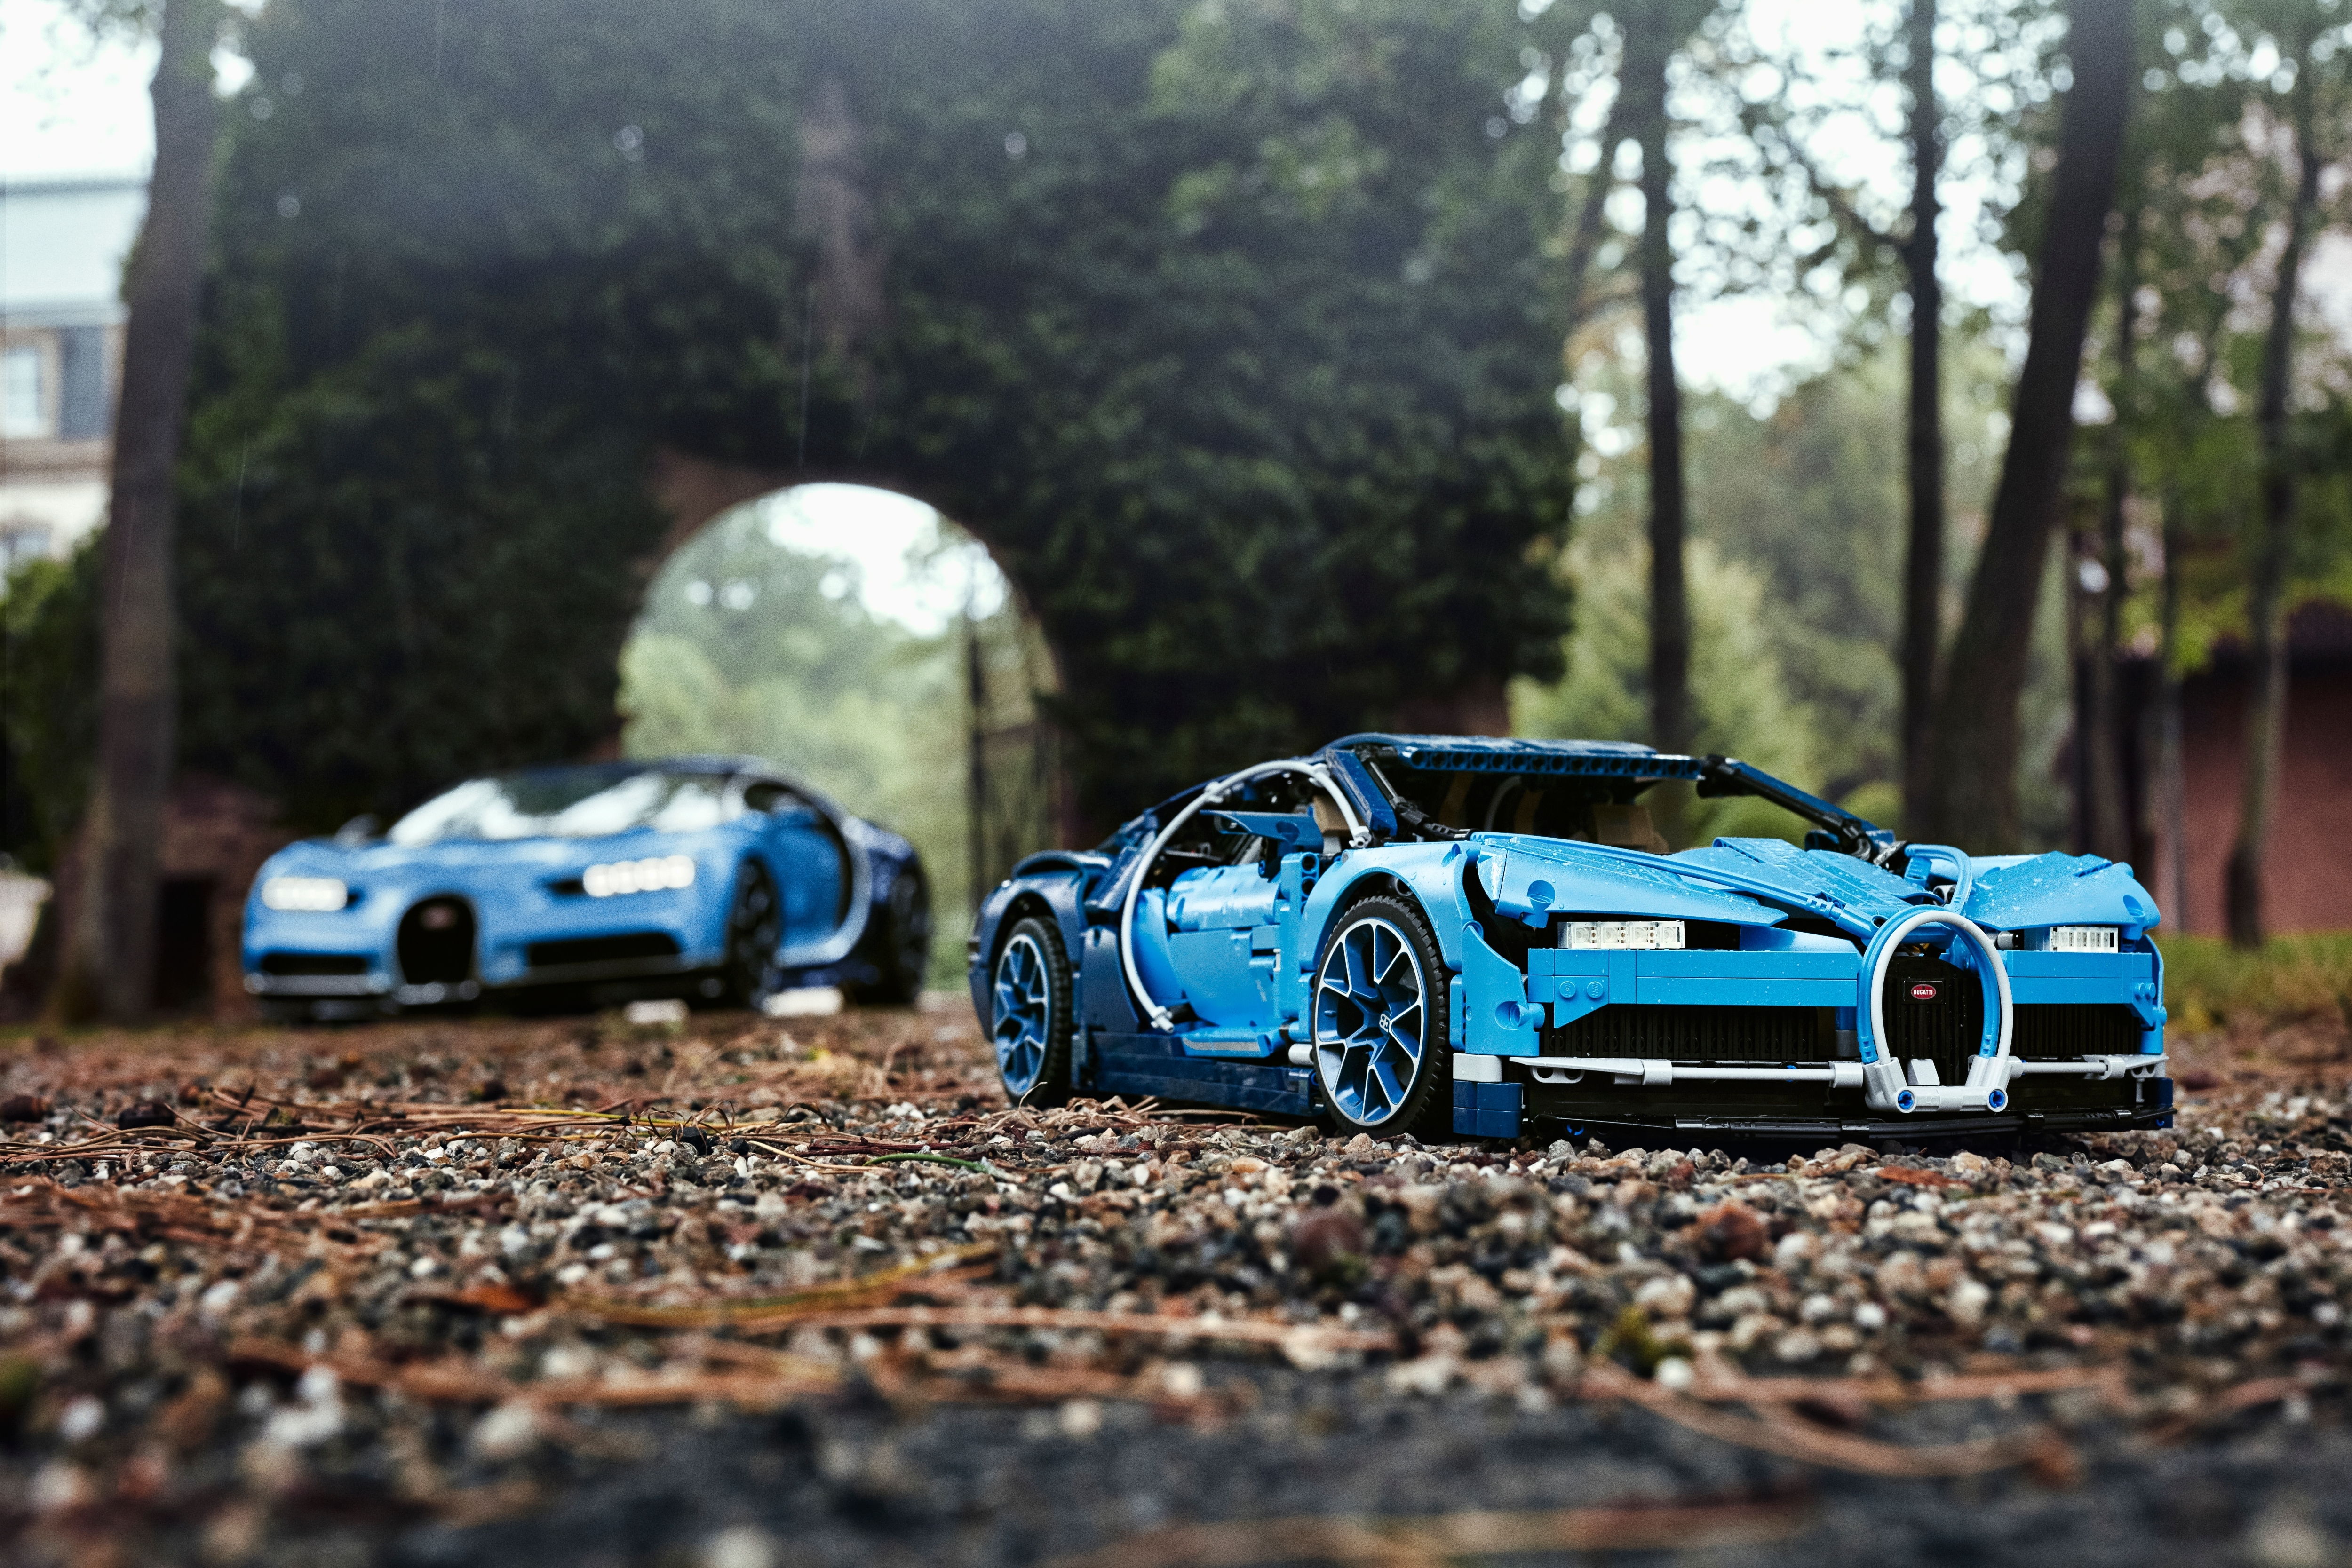 Un set LEGO Technic Bugatti Chiron pour goûter au luxe au 1:8e